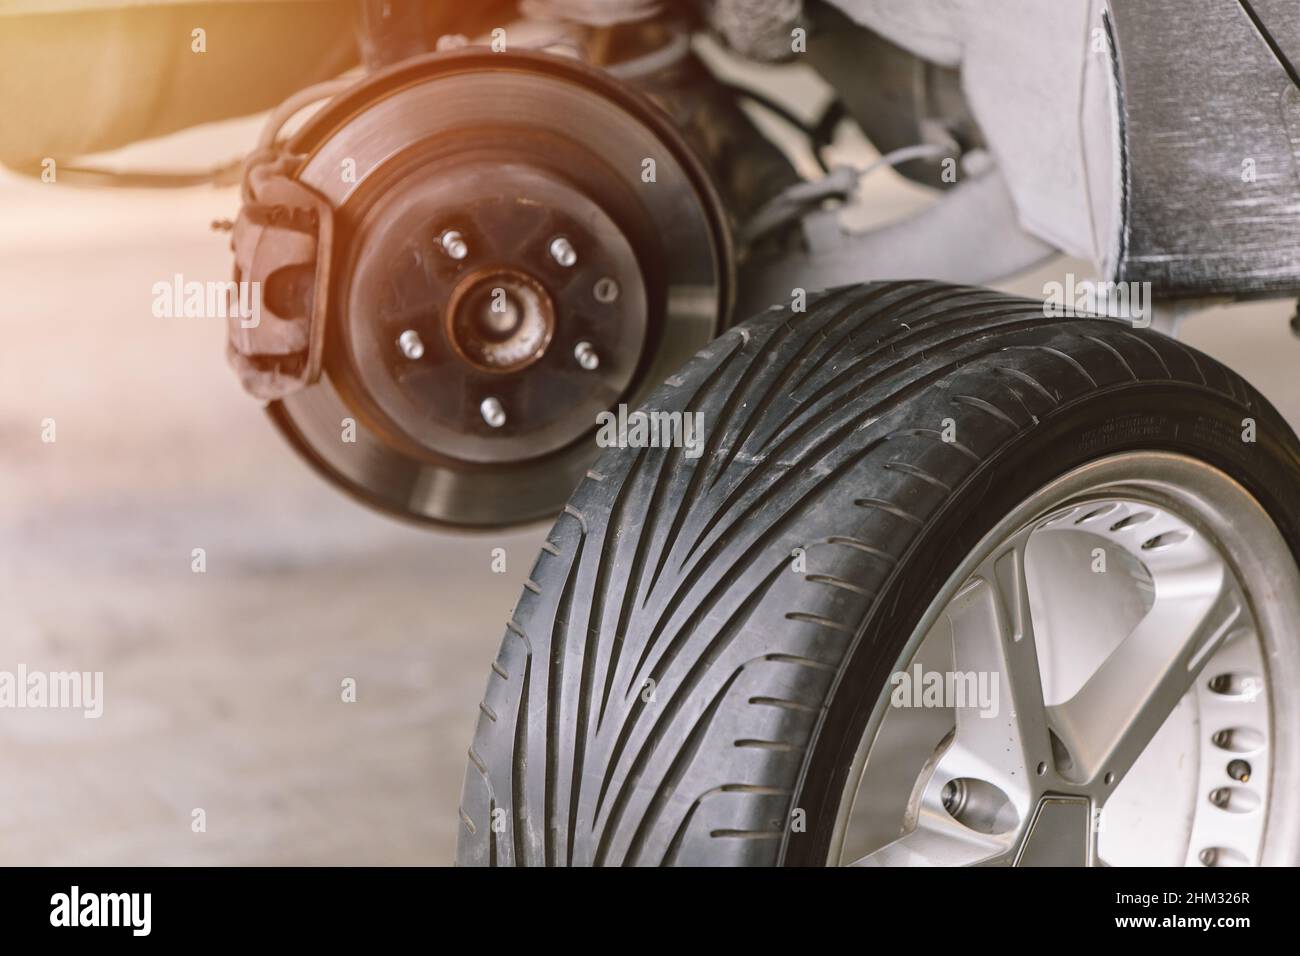 pneumatico per auto con impianto frenante a disco per ruote anteriori nei veicoli moderni Foto Stock